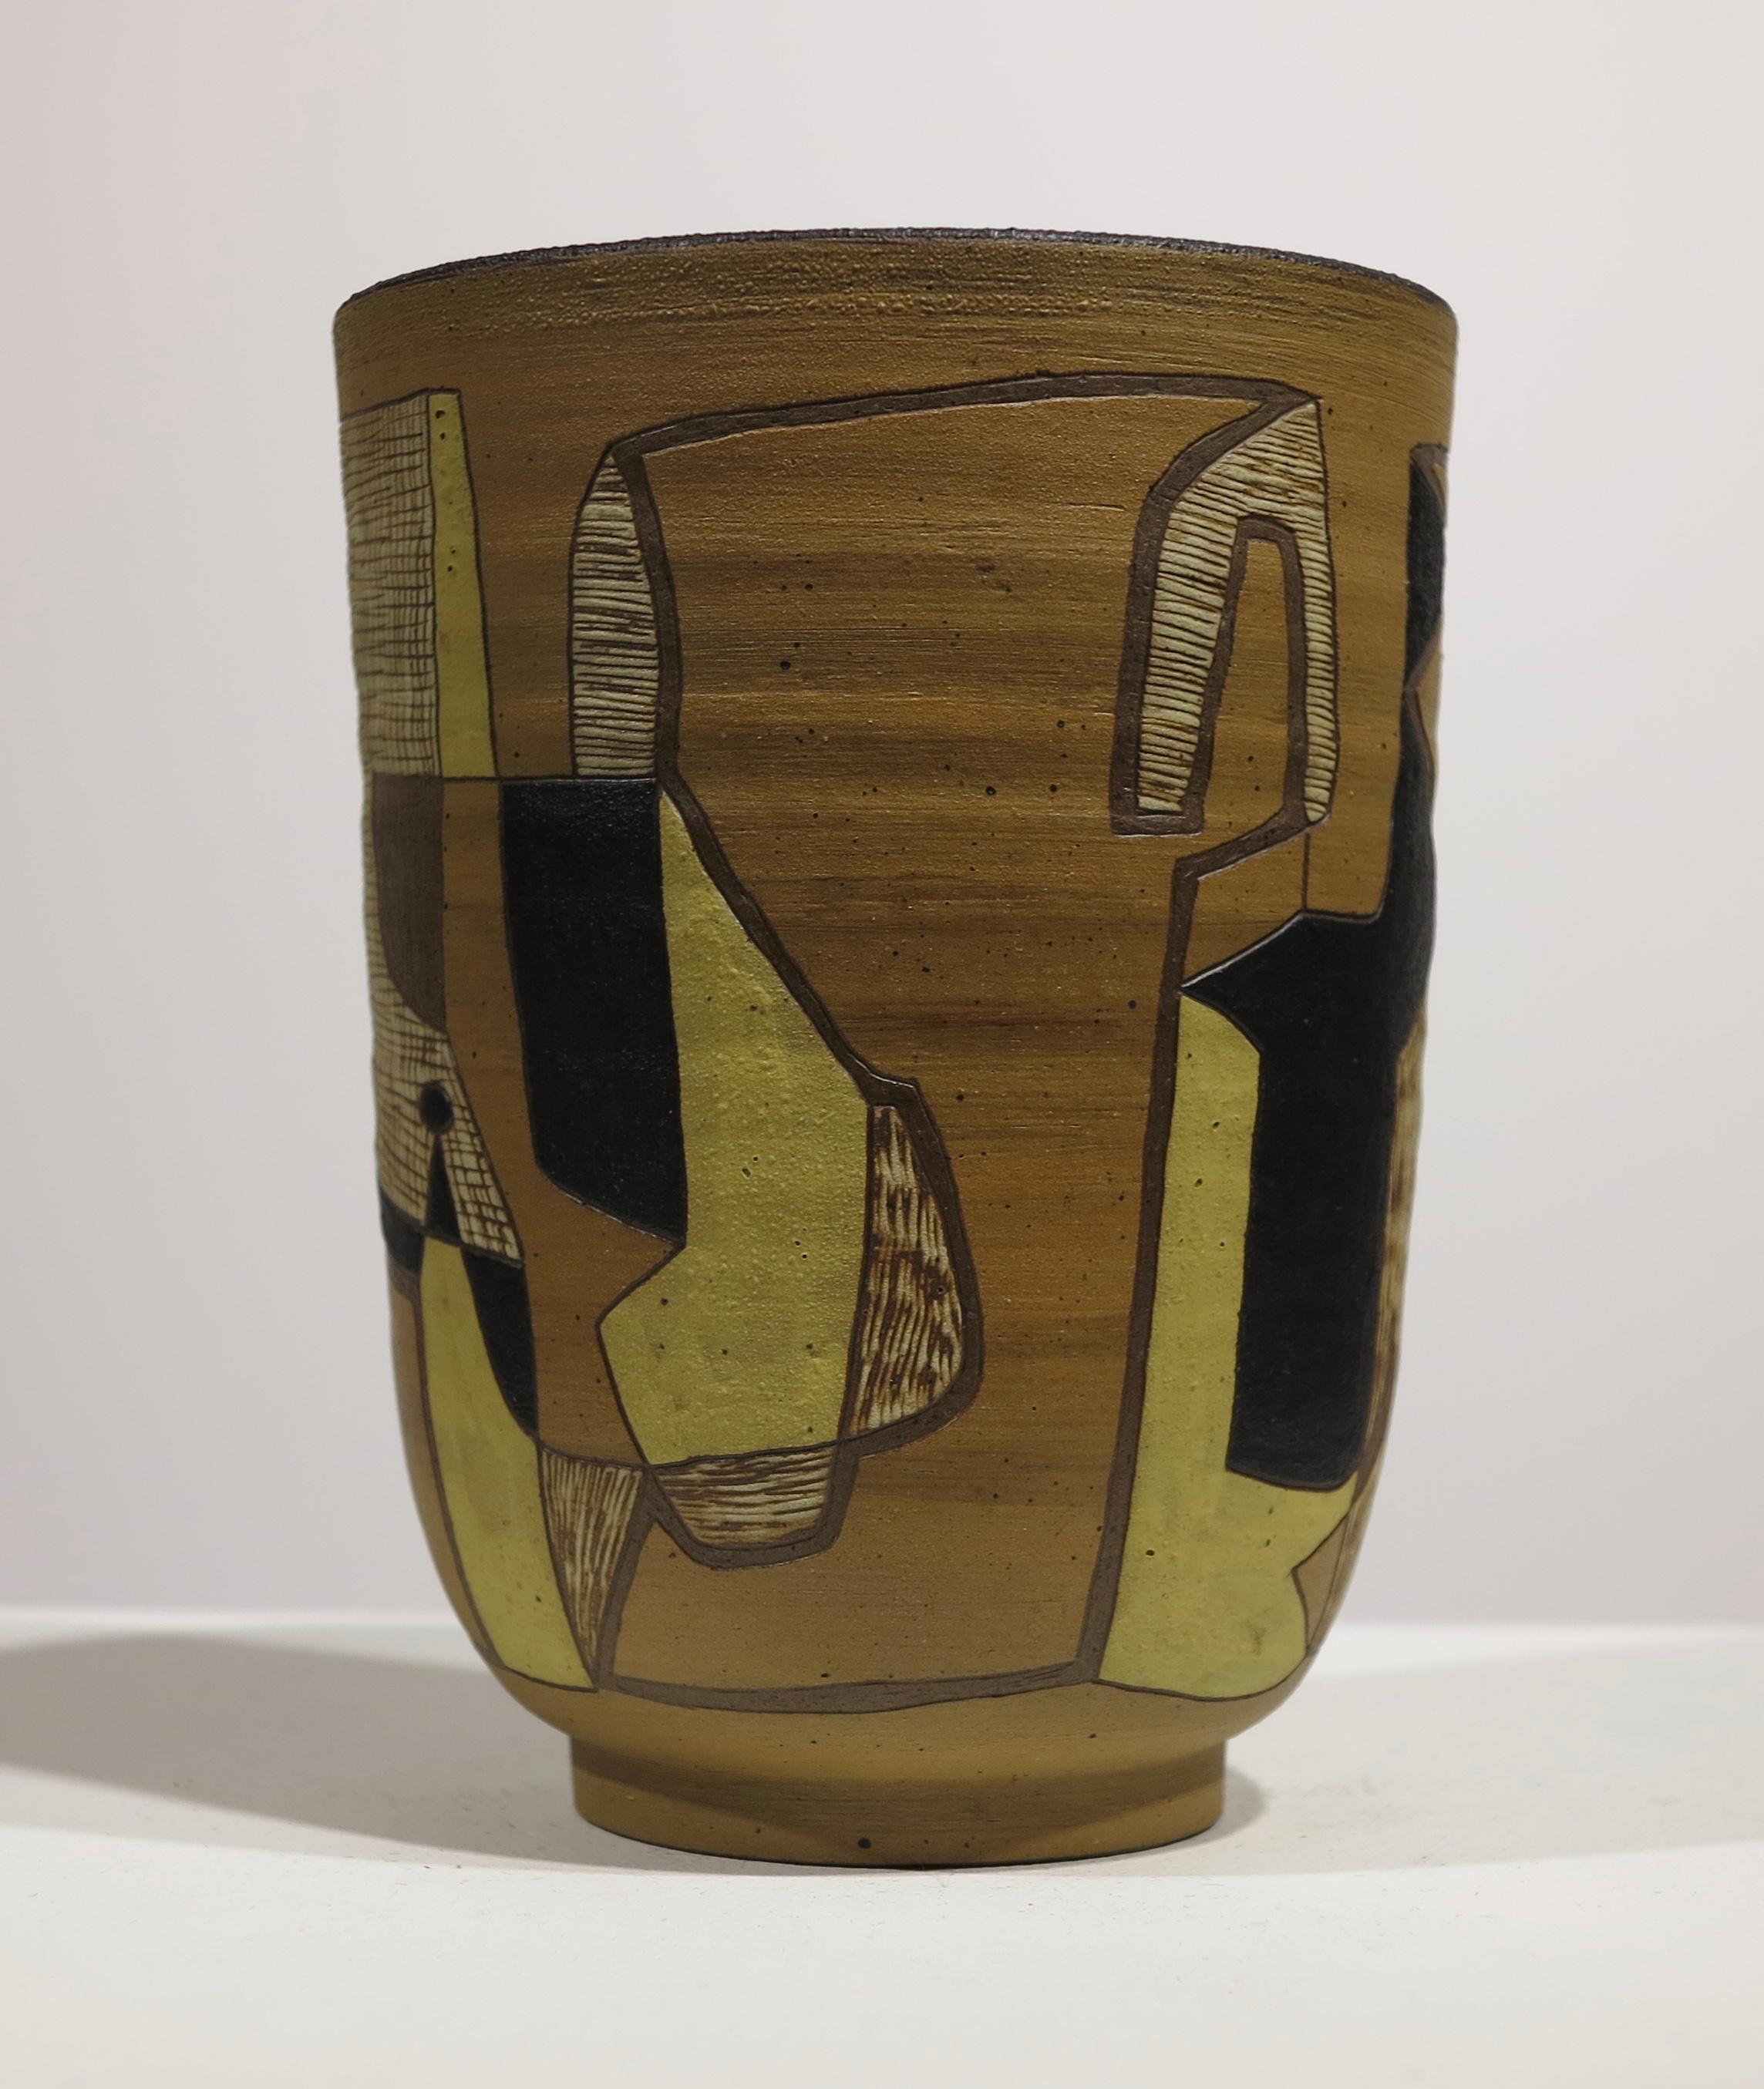 Leonard Waegell Edmondson (1916-2002). Keramik mit Sgraffito und gebrannten undurchsichtigen Polychromie. 6,5 Zoll hoch. 4,5 Zoll Umfang. Ausgezeichneter Zustand ohne Beschädigung oder Restaurierung. Signiert und datiert am